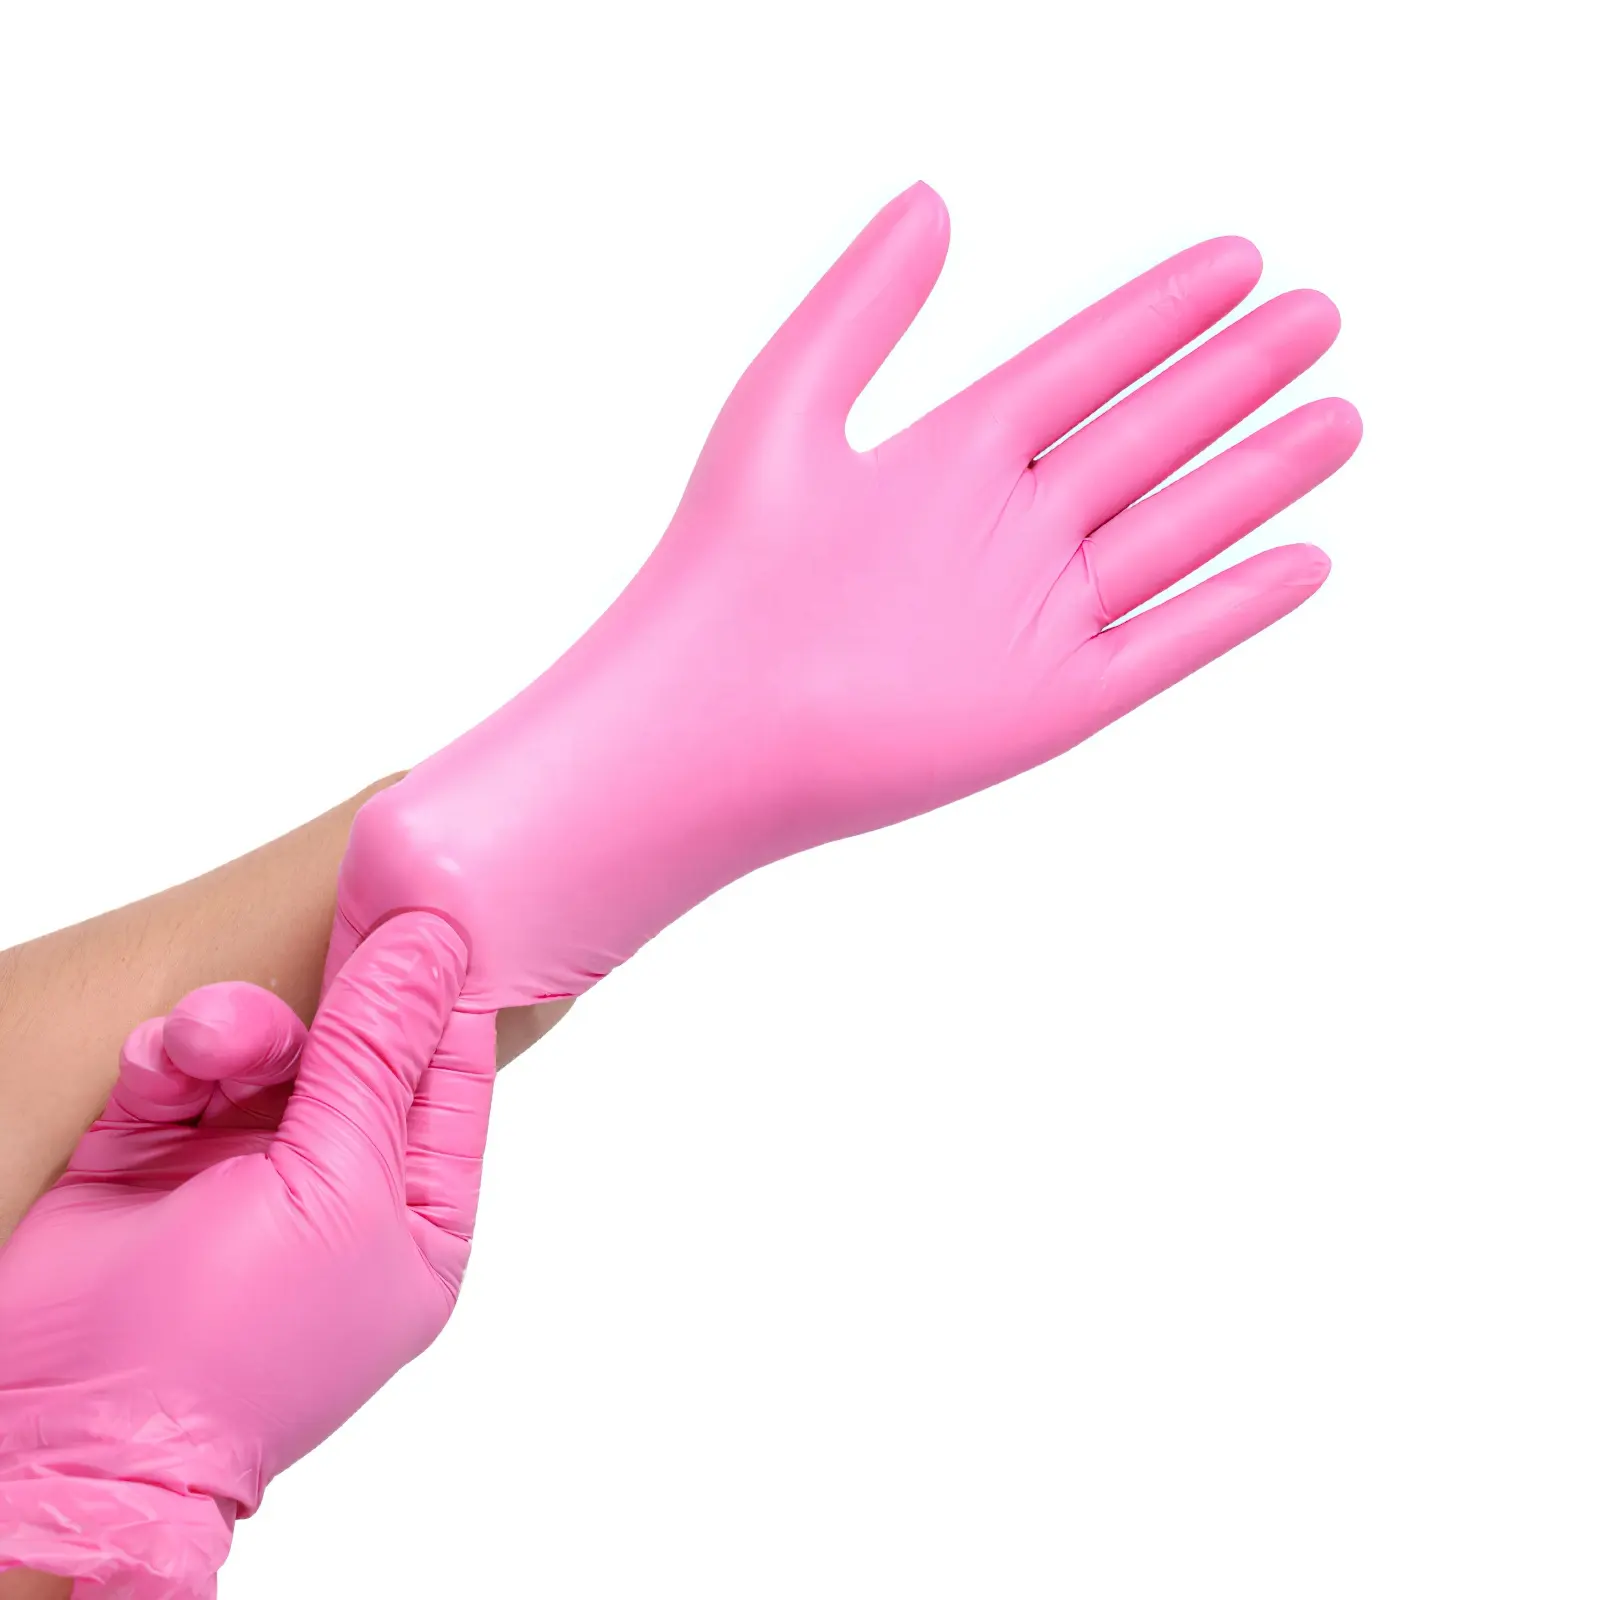 Оптовая продажа, защитные перчатки для дома, без пудры, розовые чистые нитриловые перчатки, дешевые одноразовые безопасные розовые чистые нитриловые перчатки